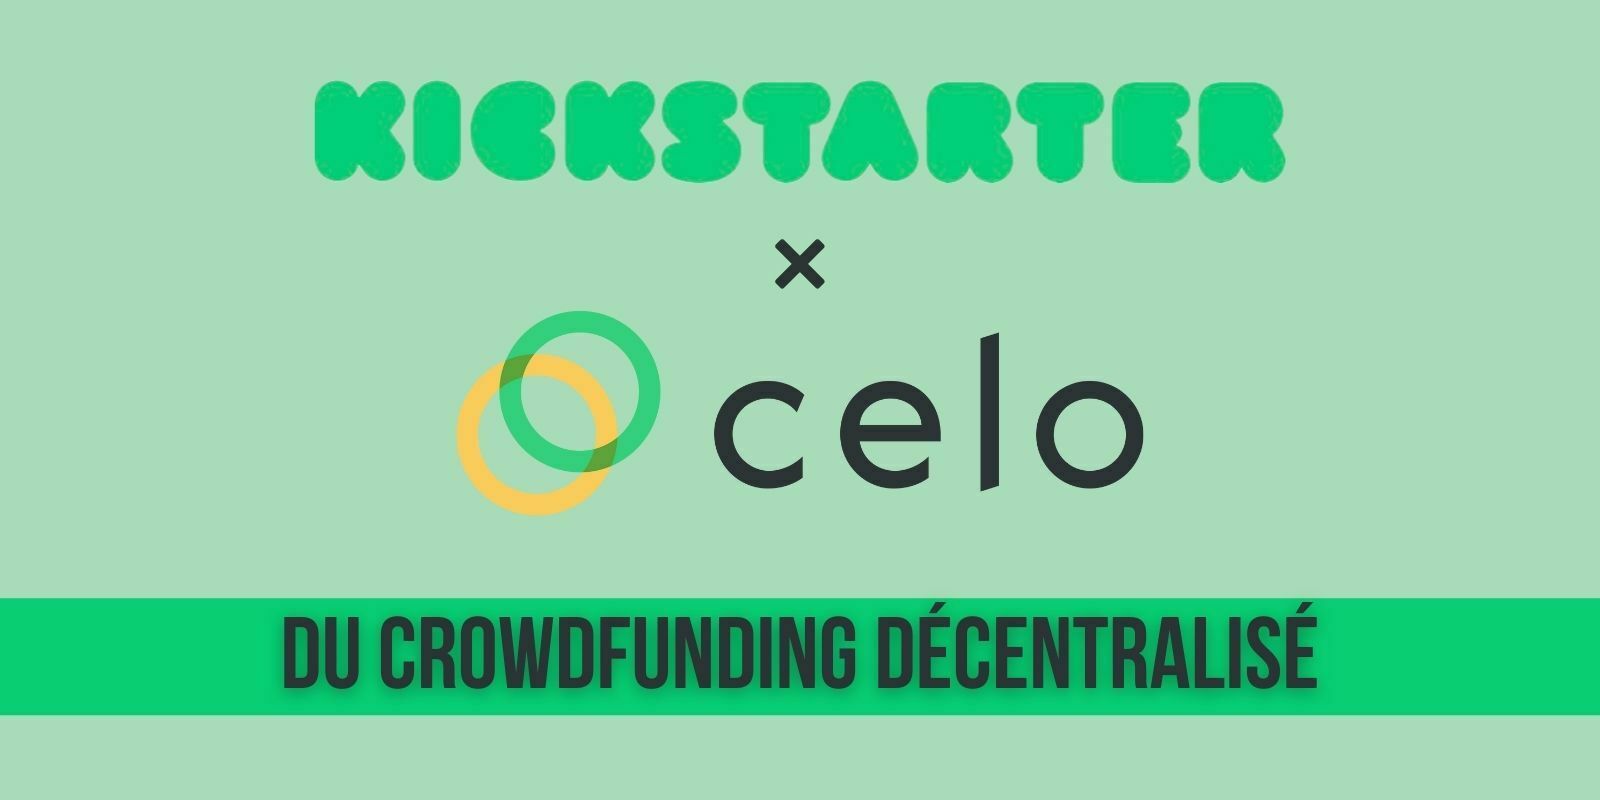 Kickstarter lancera un protocole de crowdfunding décentralisé sur la blockchain Celo